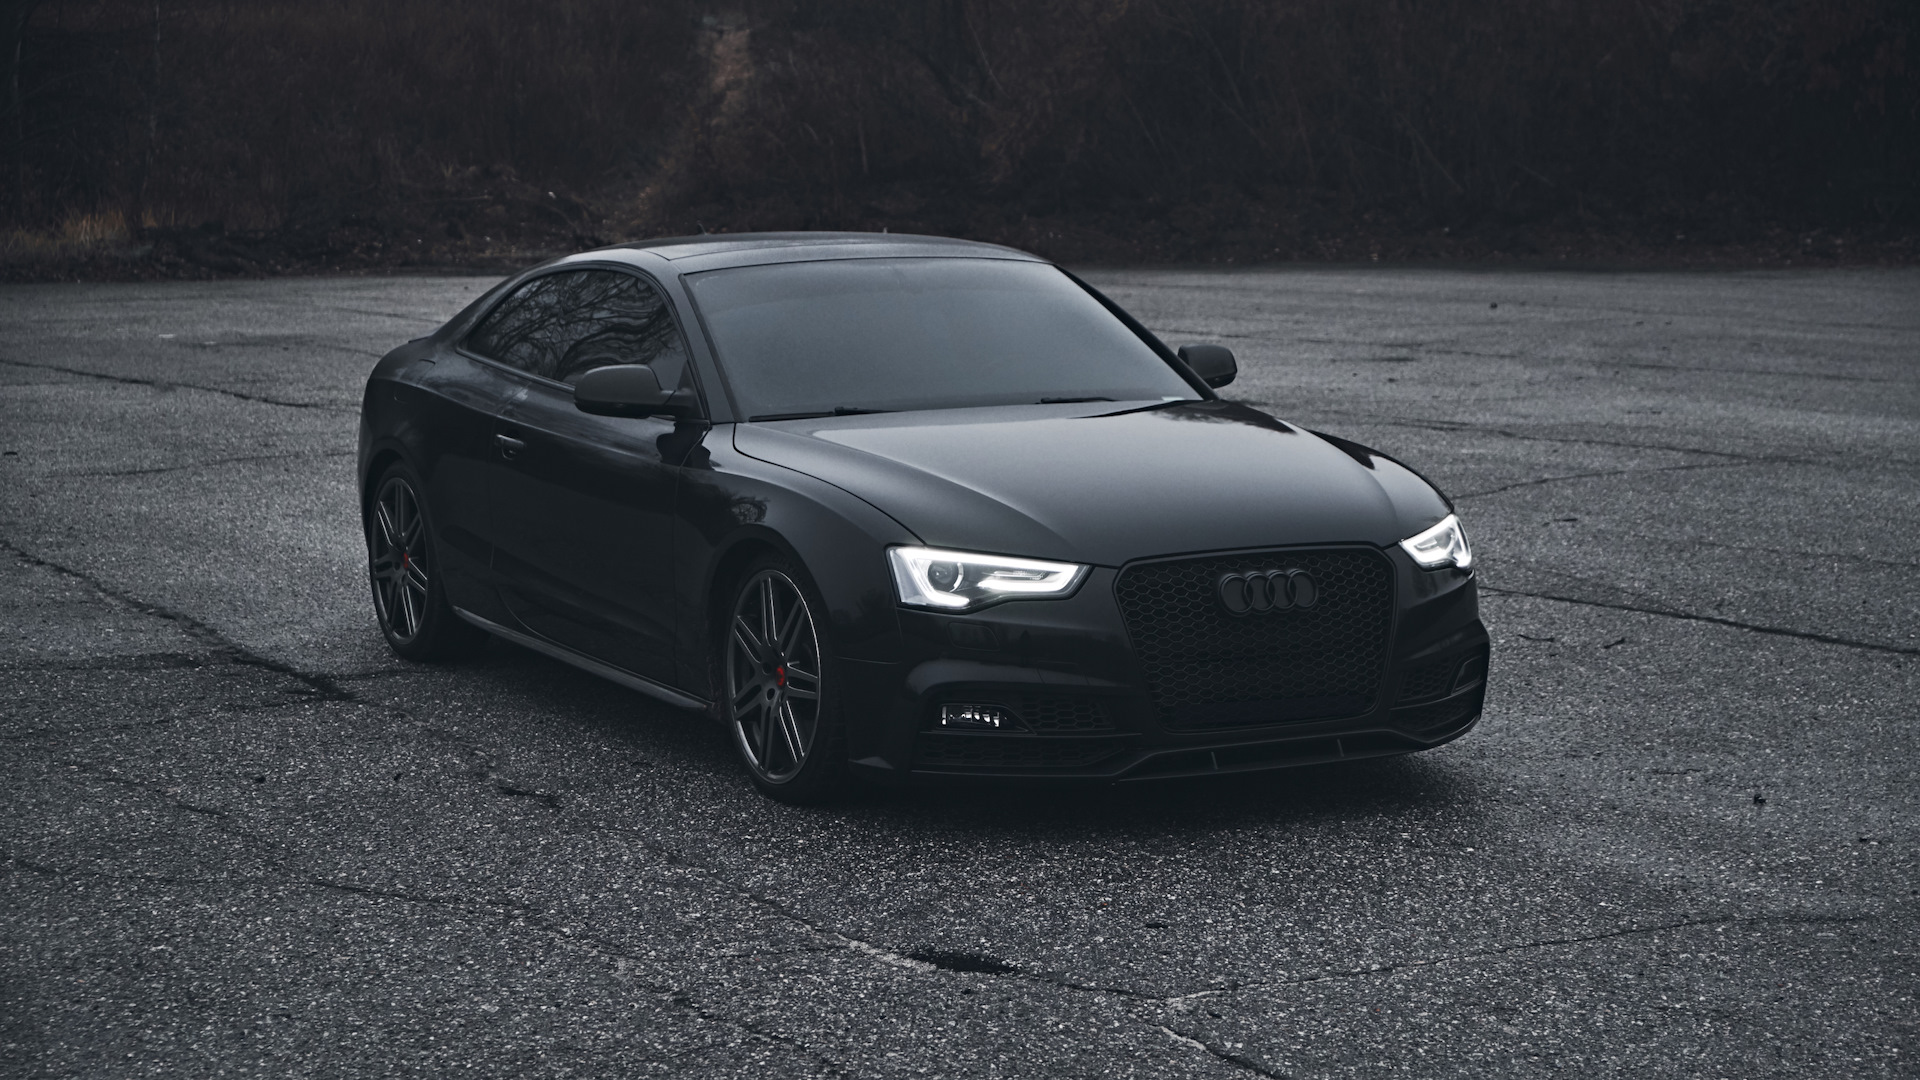 Audi a6 черный дым